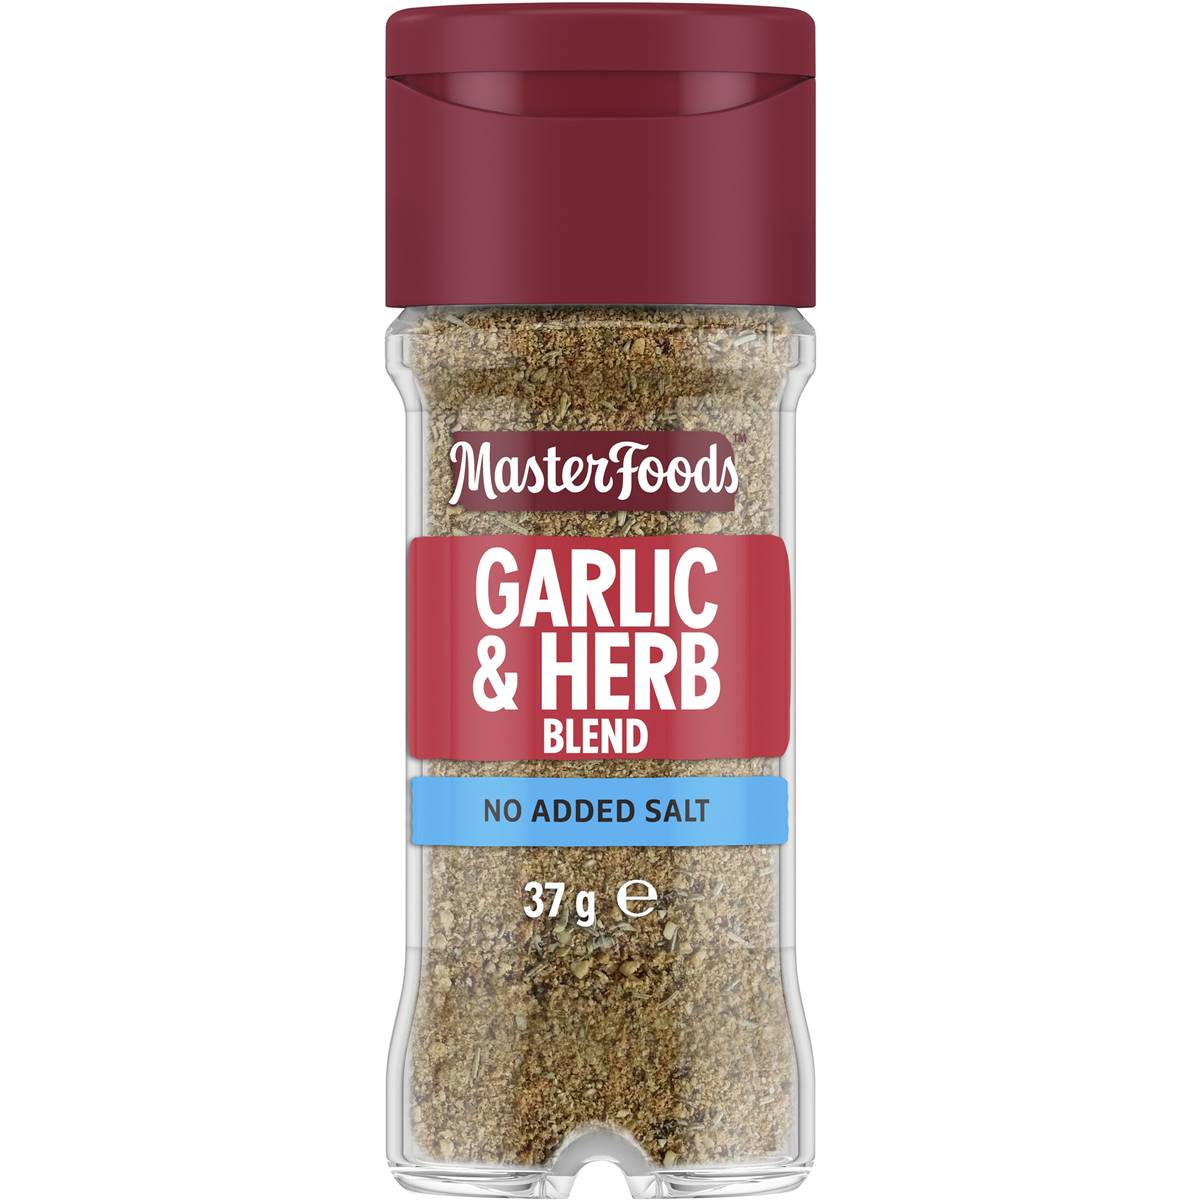 Masterfoods Garlic & Herb Blend No Added Salt